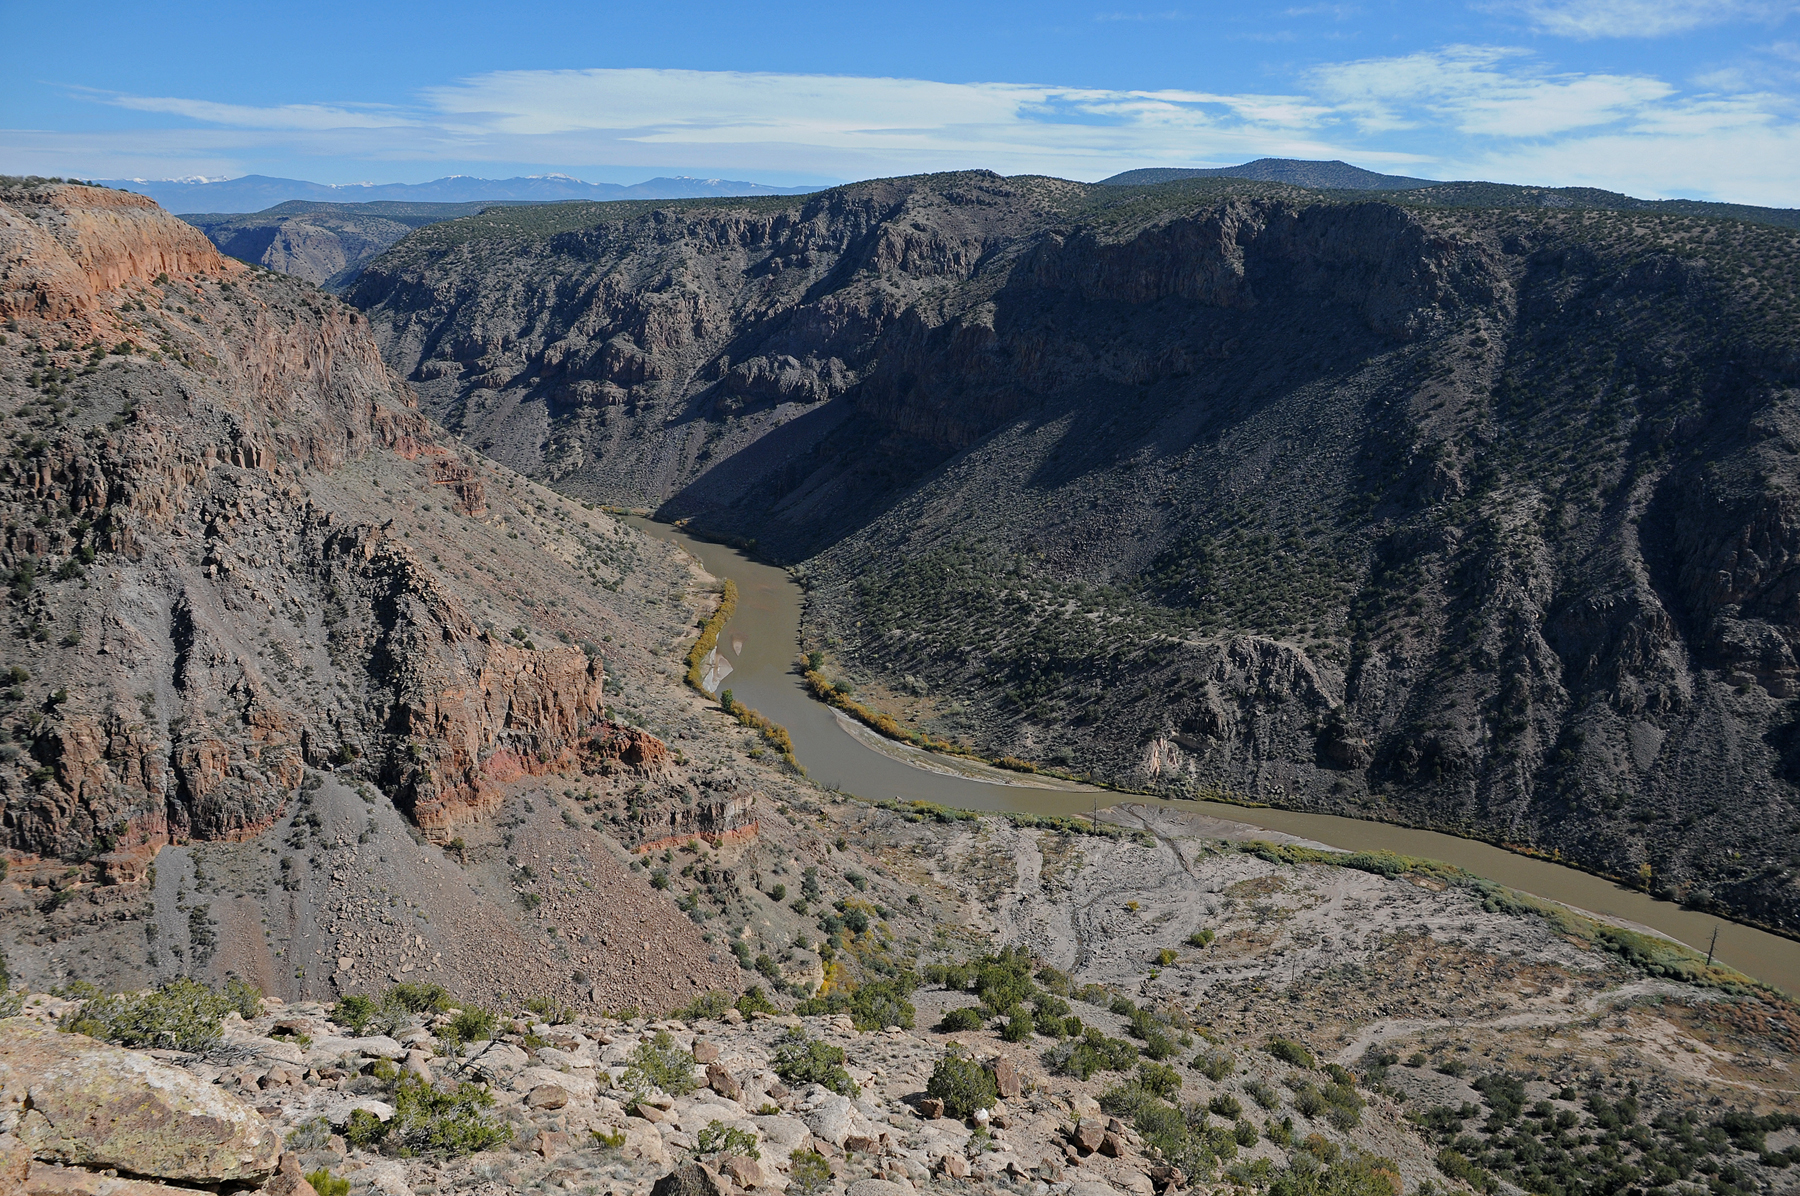 a view of the Rio Grande